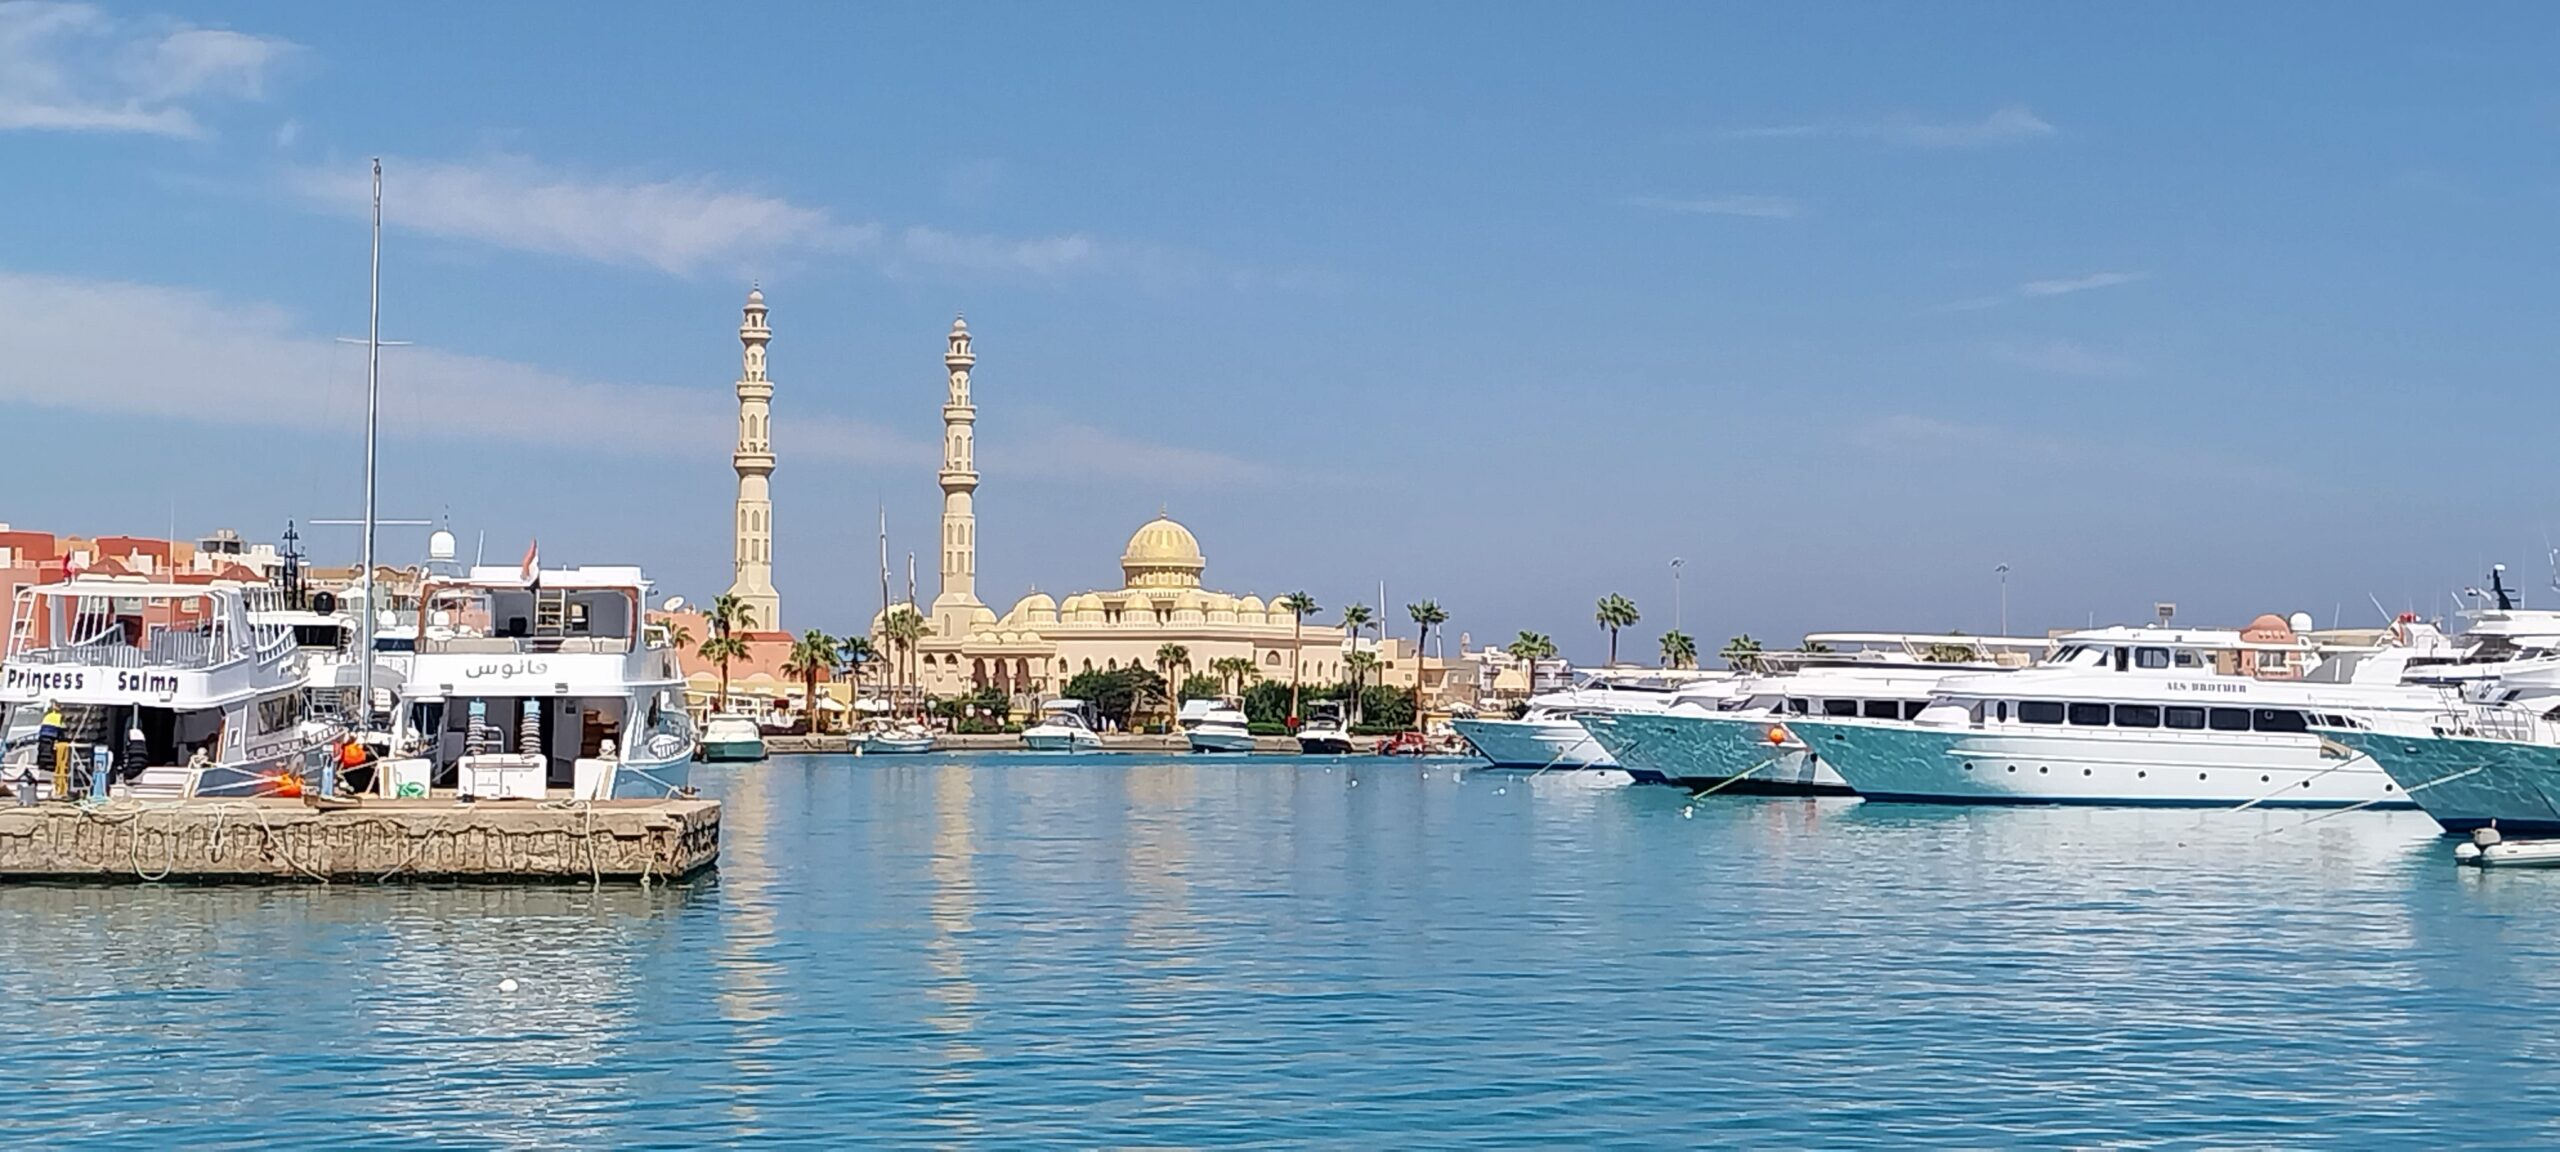 Hurghadasehenswürdigkeiten und Obst- Gemüsemarket Die Große Moschee in Hurghad